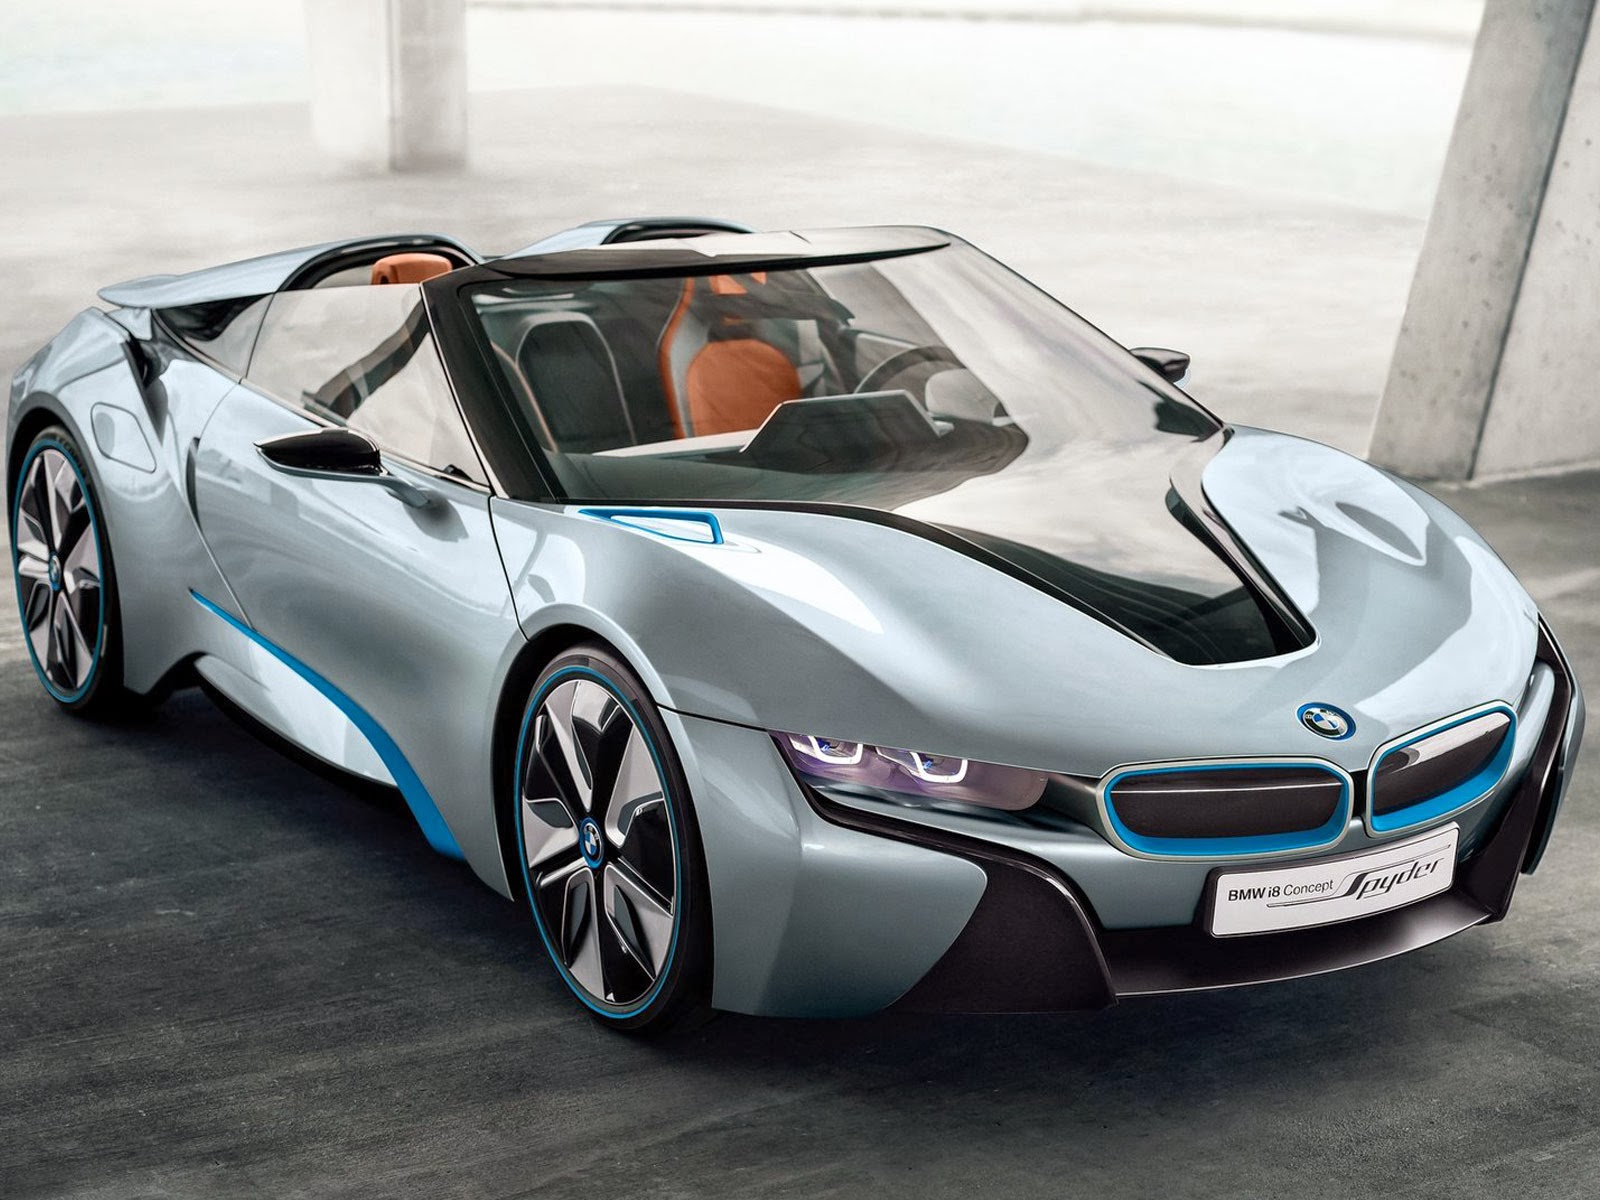 Gambar Gambar Mobil BMW Terbaru 2014 Sport Dan Mewah Informasi